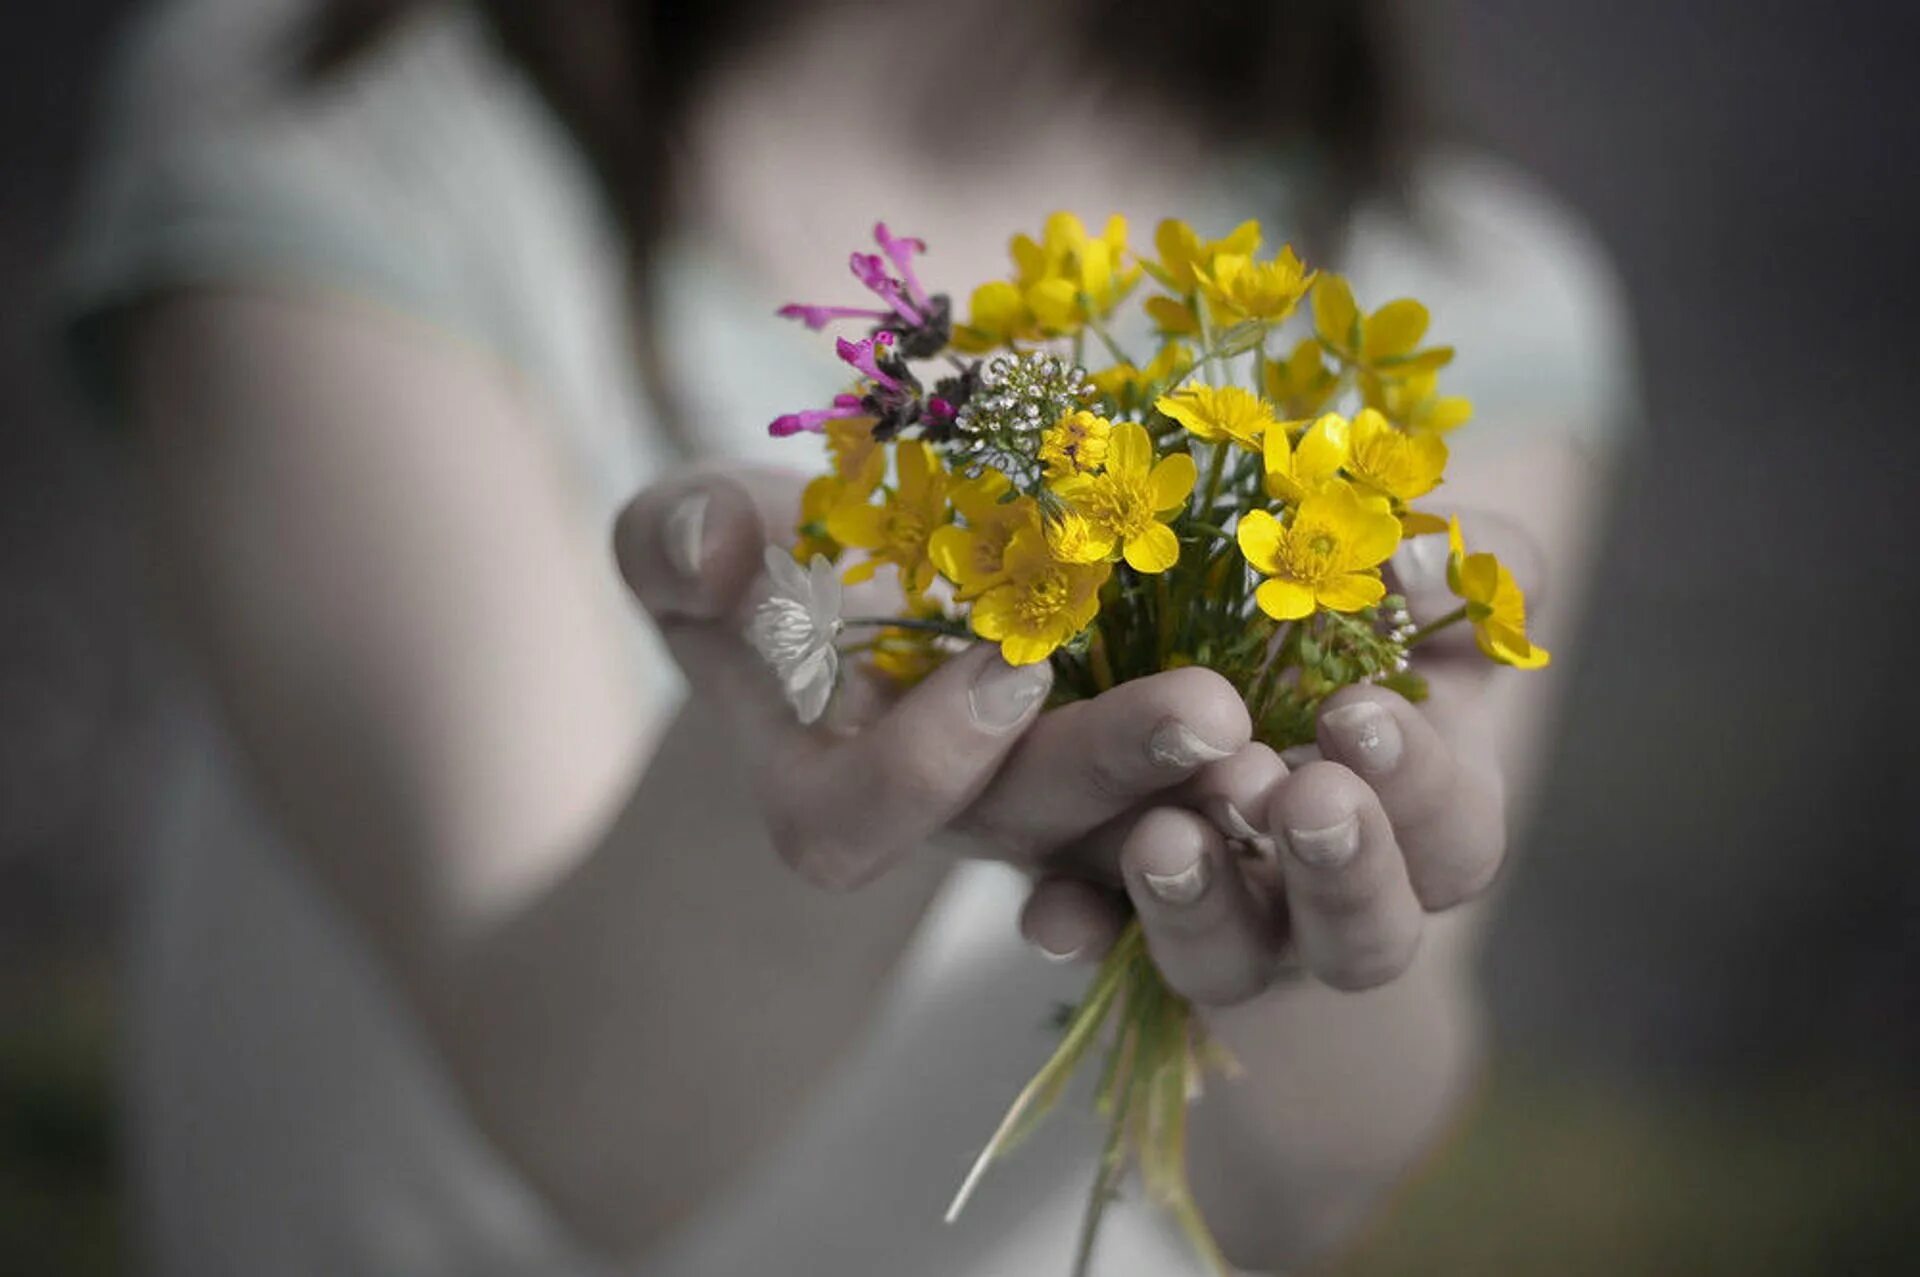 Цветы в ладонях. Цветы радости. Цветы радости жизни. Счастье в руках.